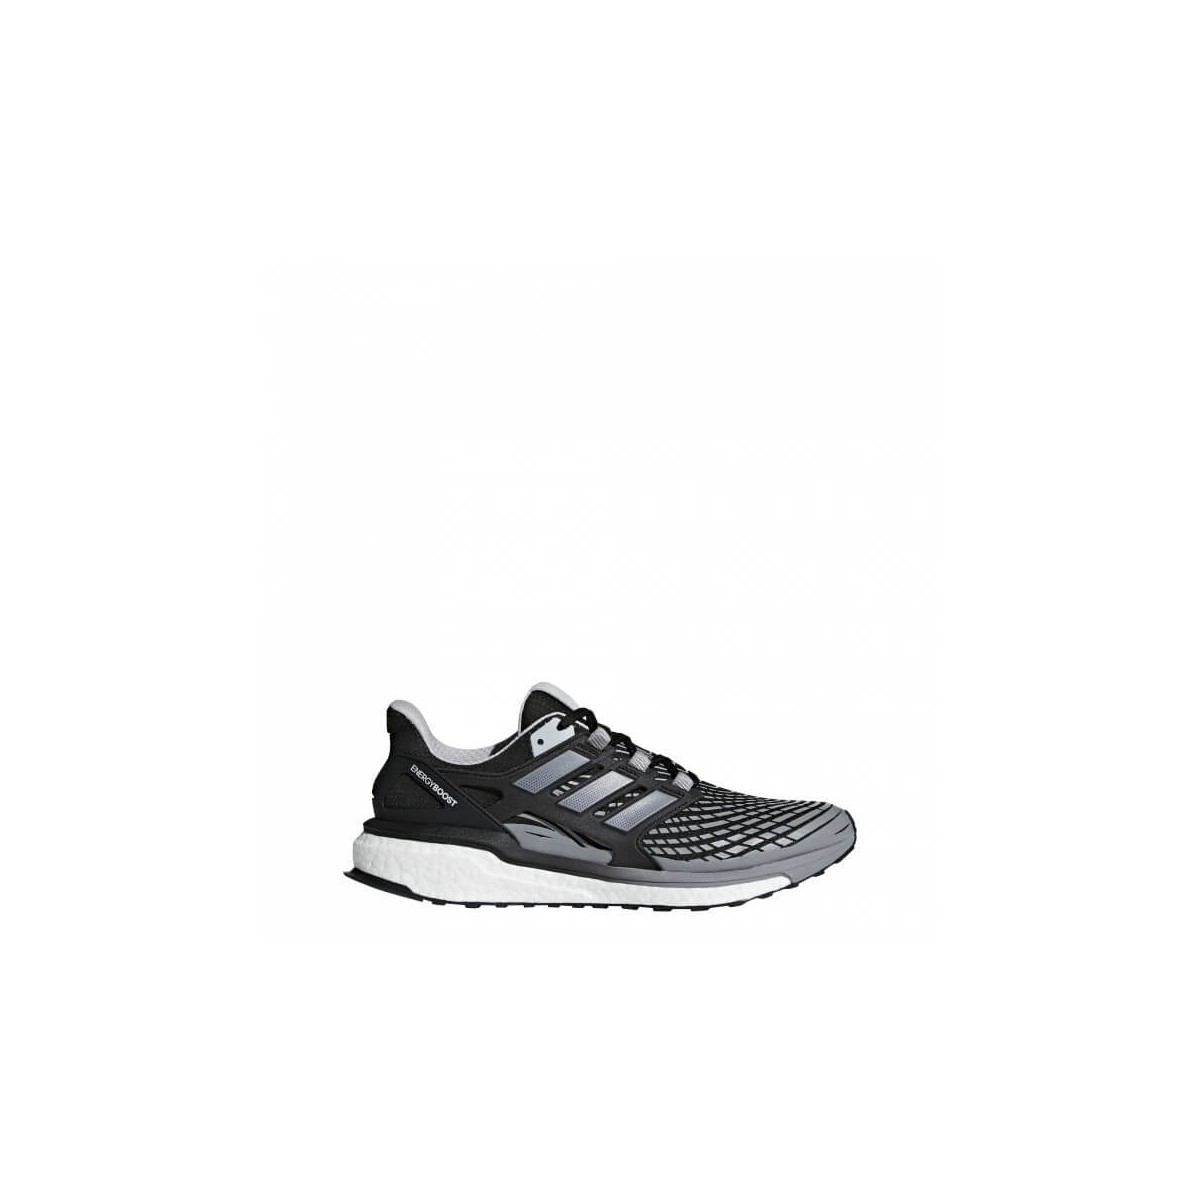 Zapatillas Adidas Energy Boost 4 hombre PV18 color gris y